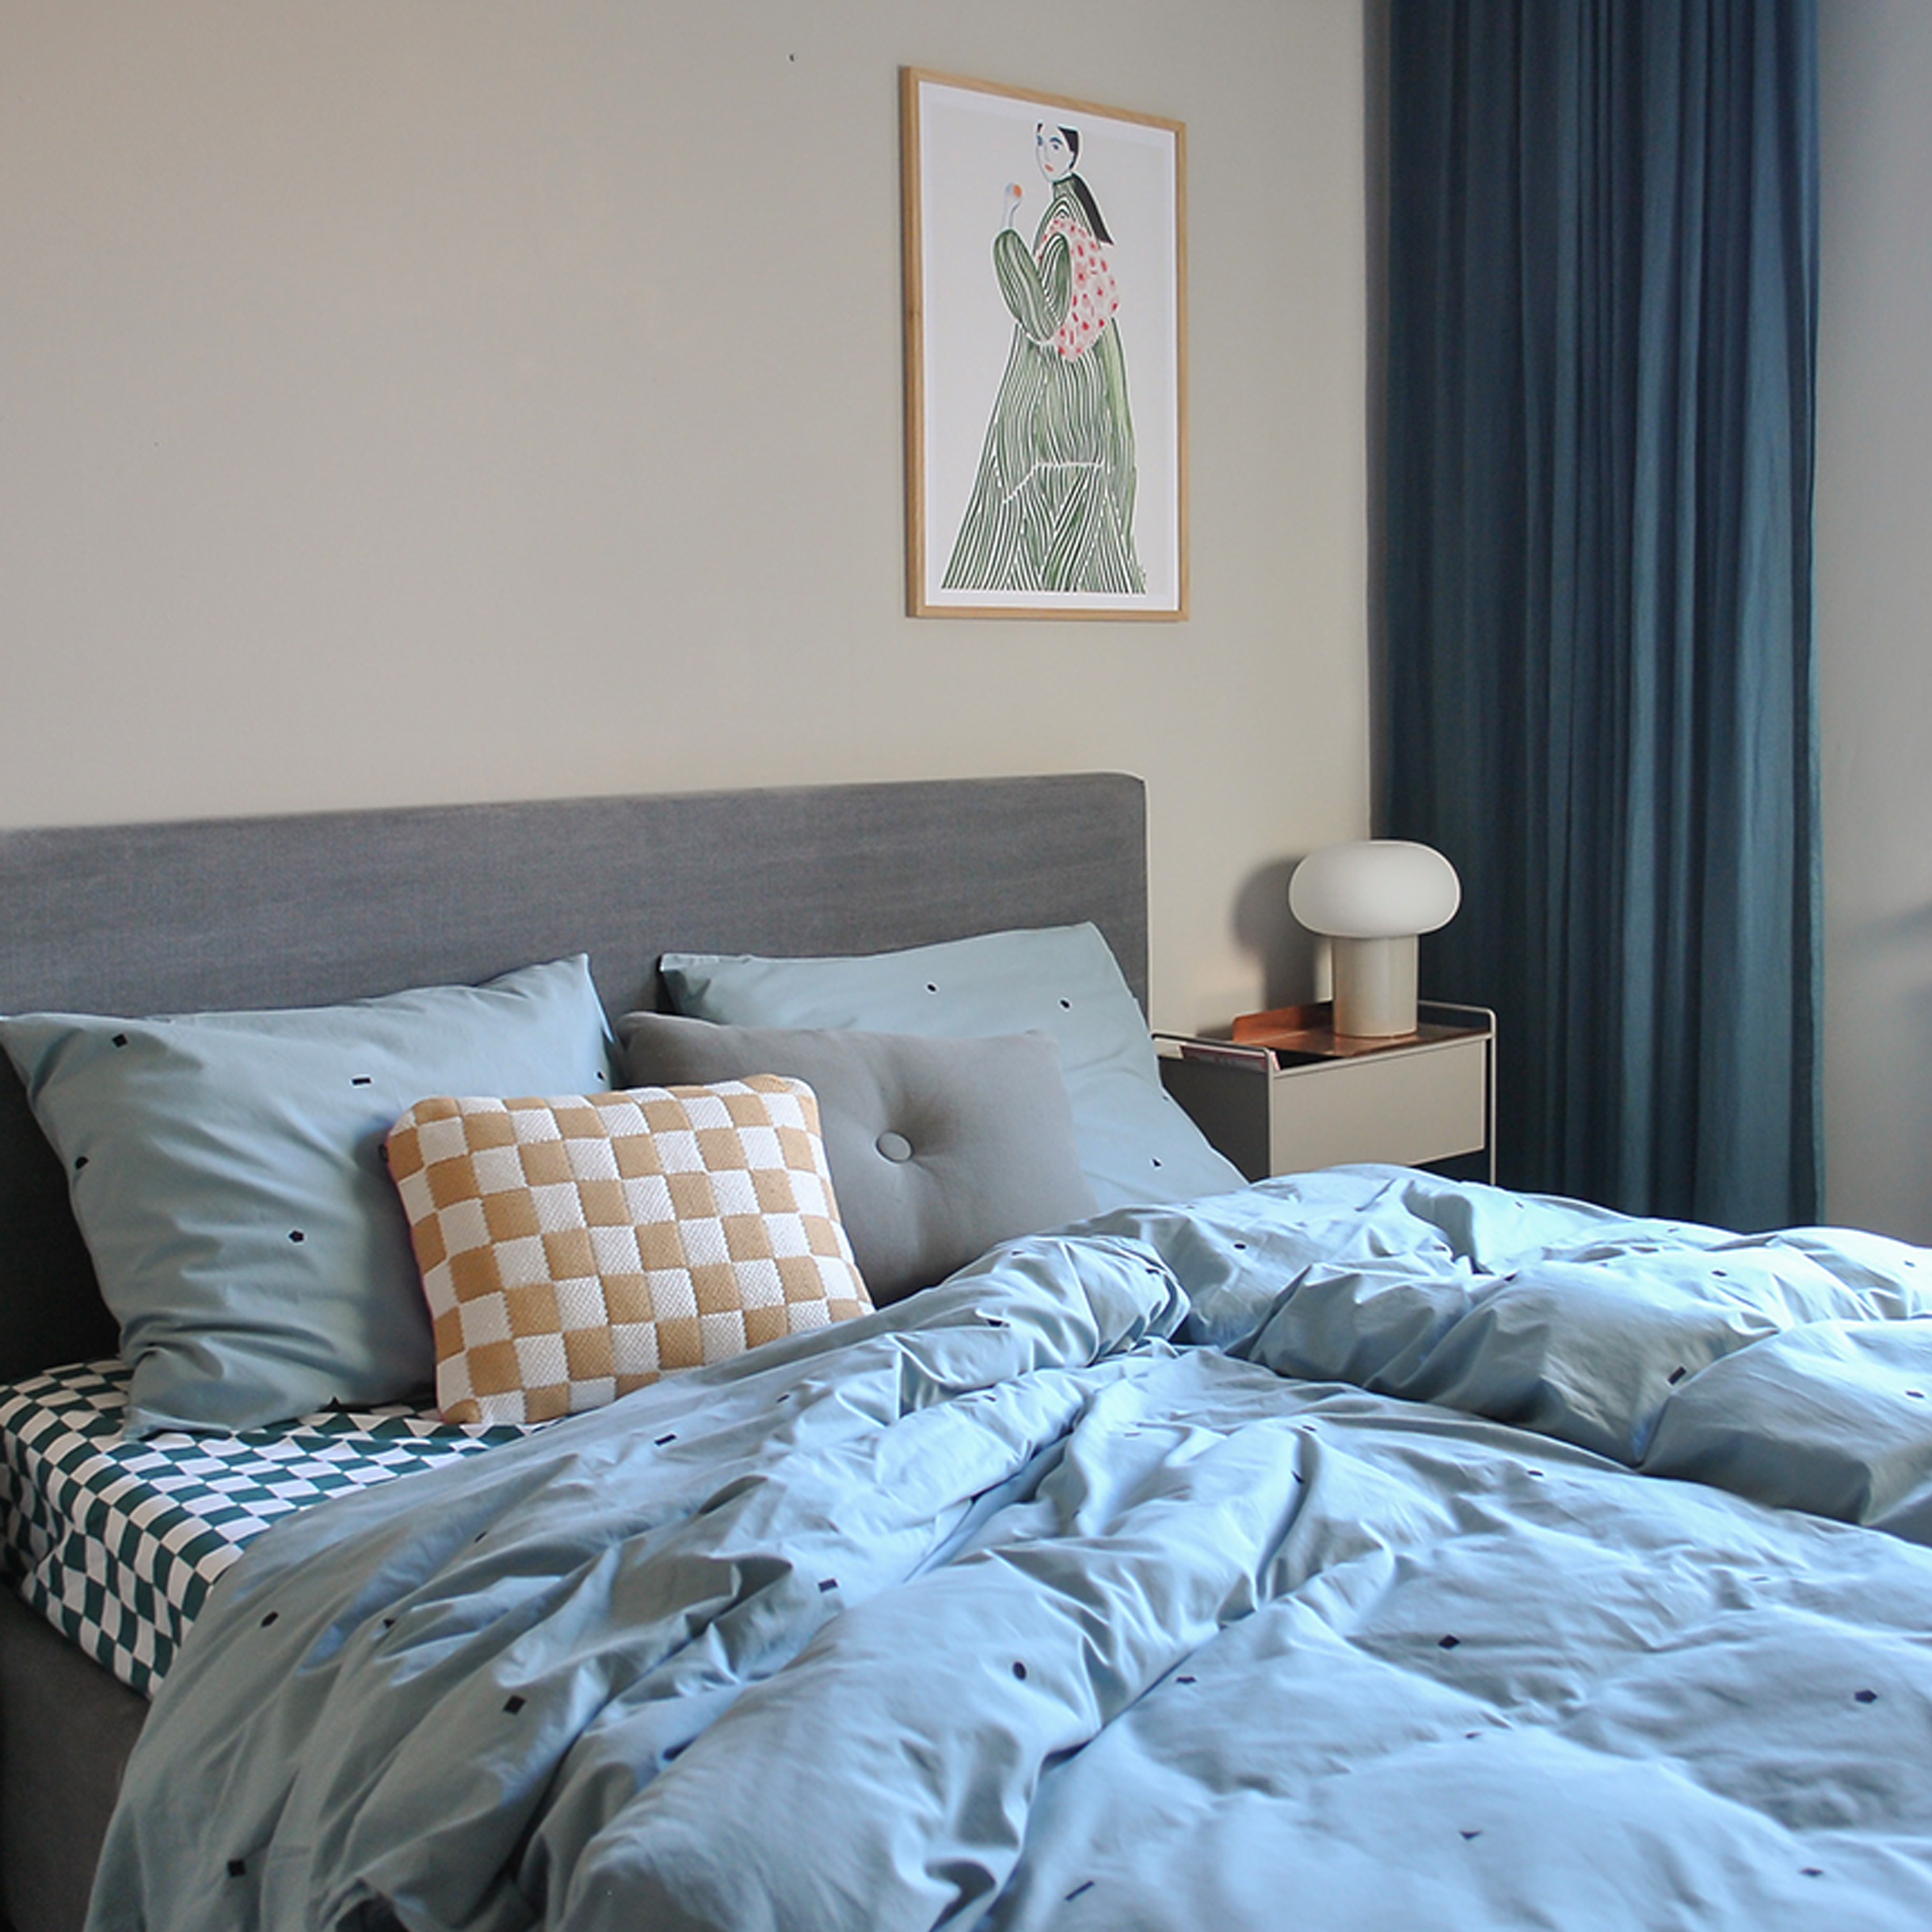 Bedroom with Studio Ditte bedding